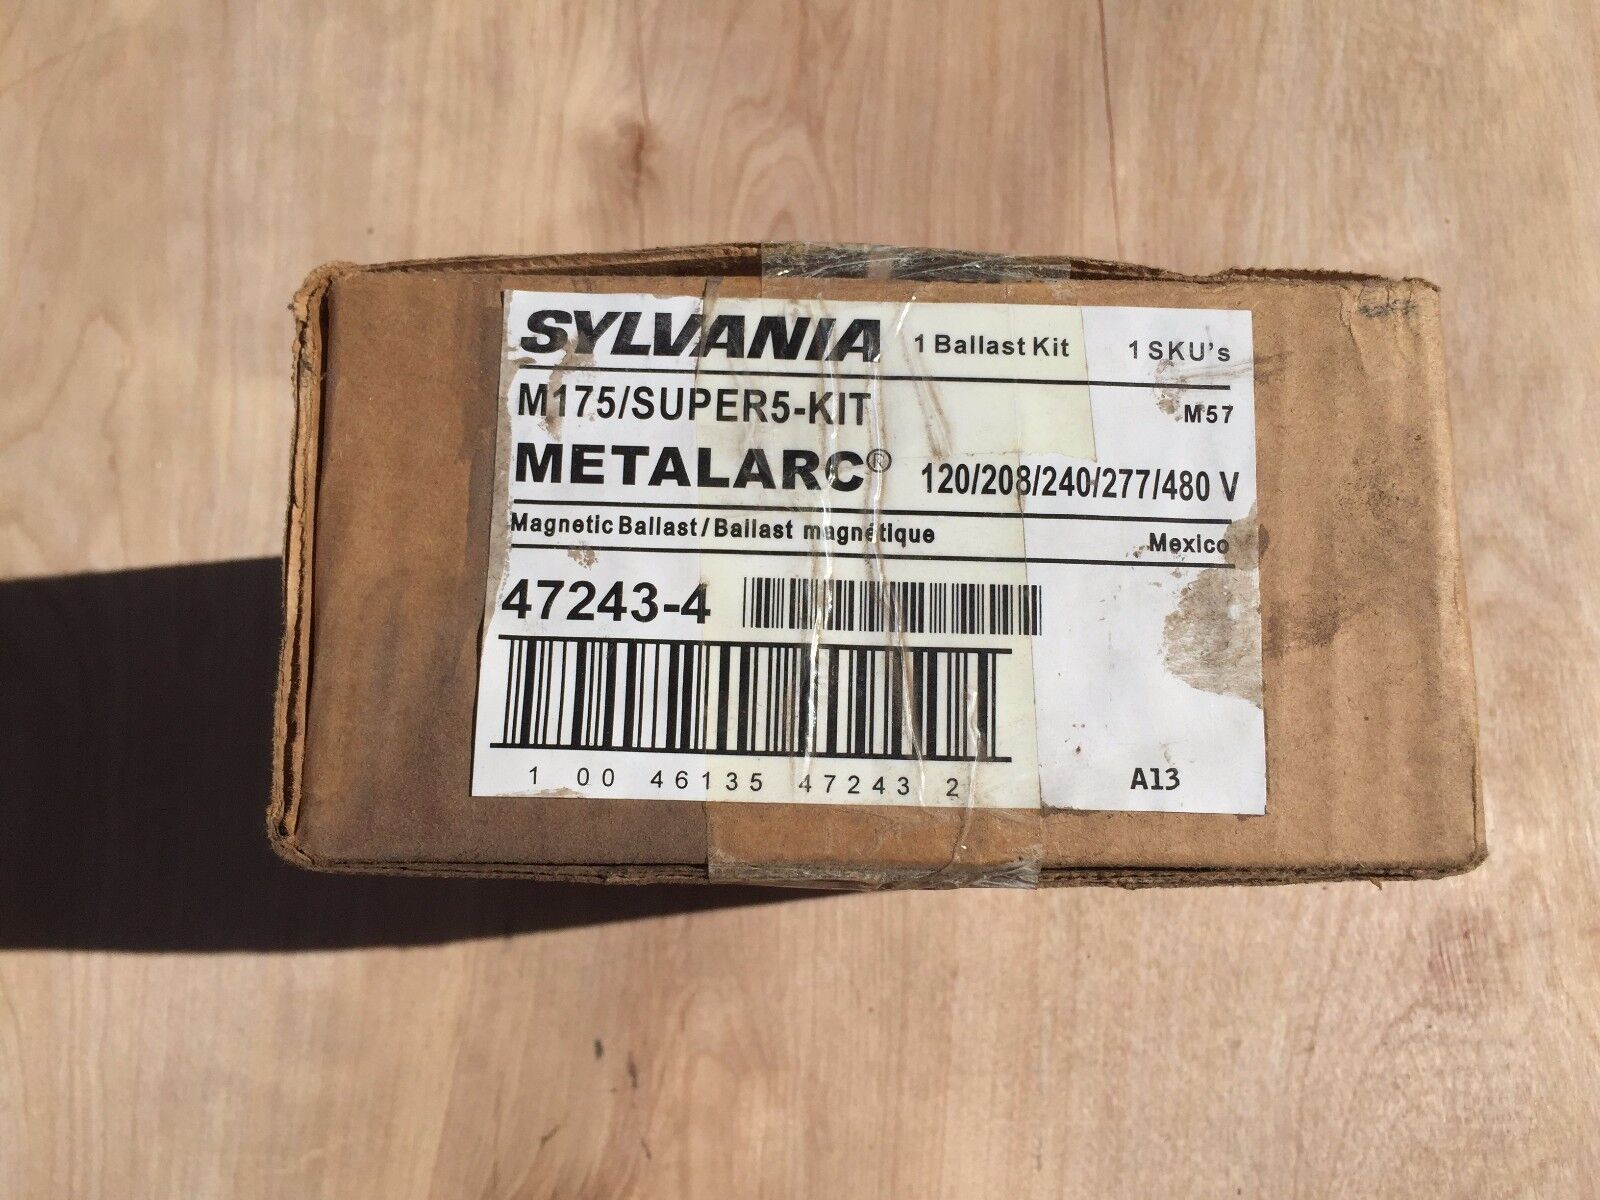 Sylvania-M175-Super5-Kit-Metalarc-Magnetic-Ballast 